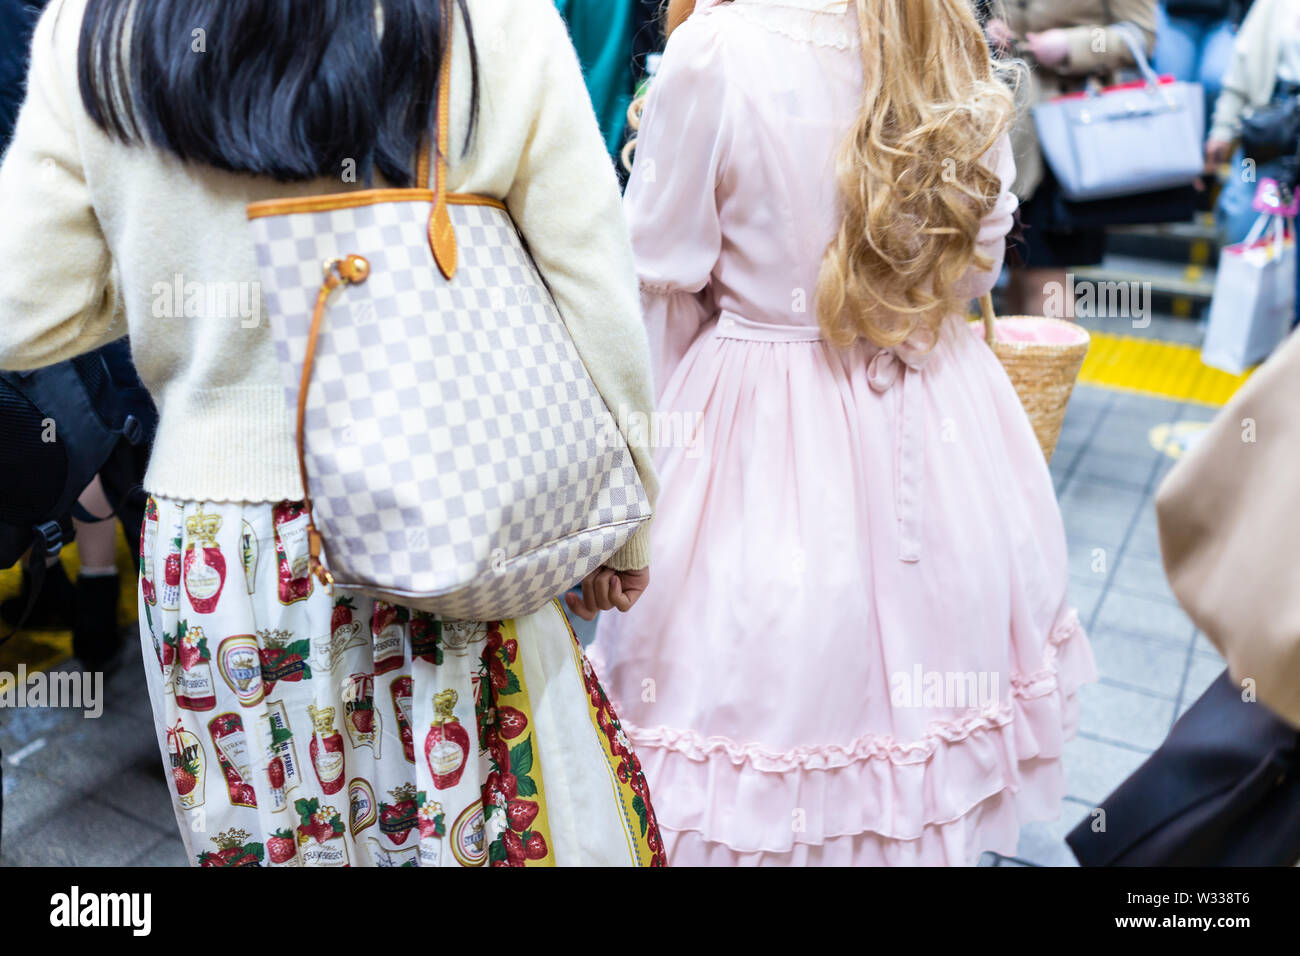 Tokyo, Giappone - Aprile 4, 2019: indietro di due giovani donne ragazze vestite in cosplay bambole, abito rosa all'interno della trafficata Shinjuku stazione ferroviaria terminale con p Foto Stock